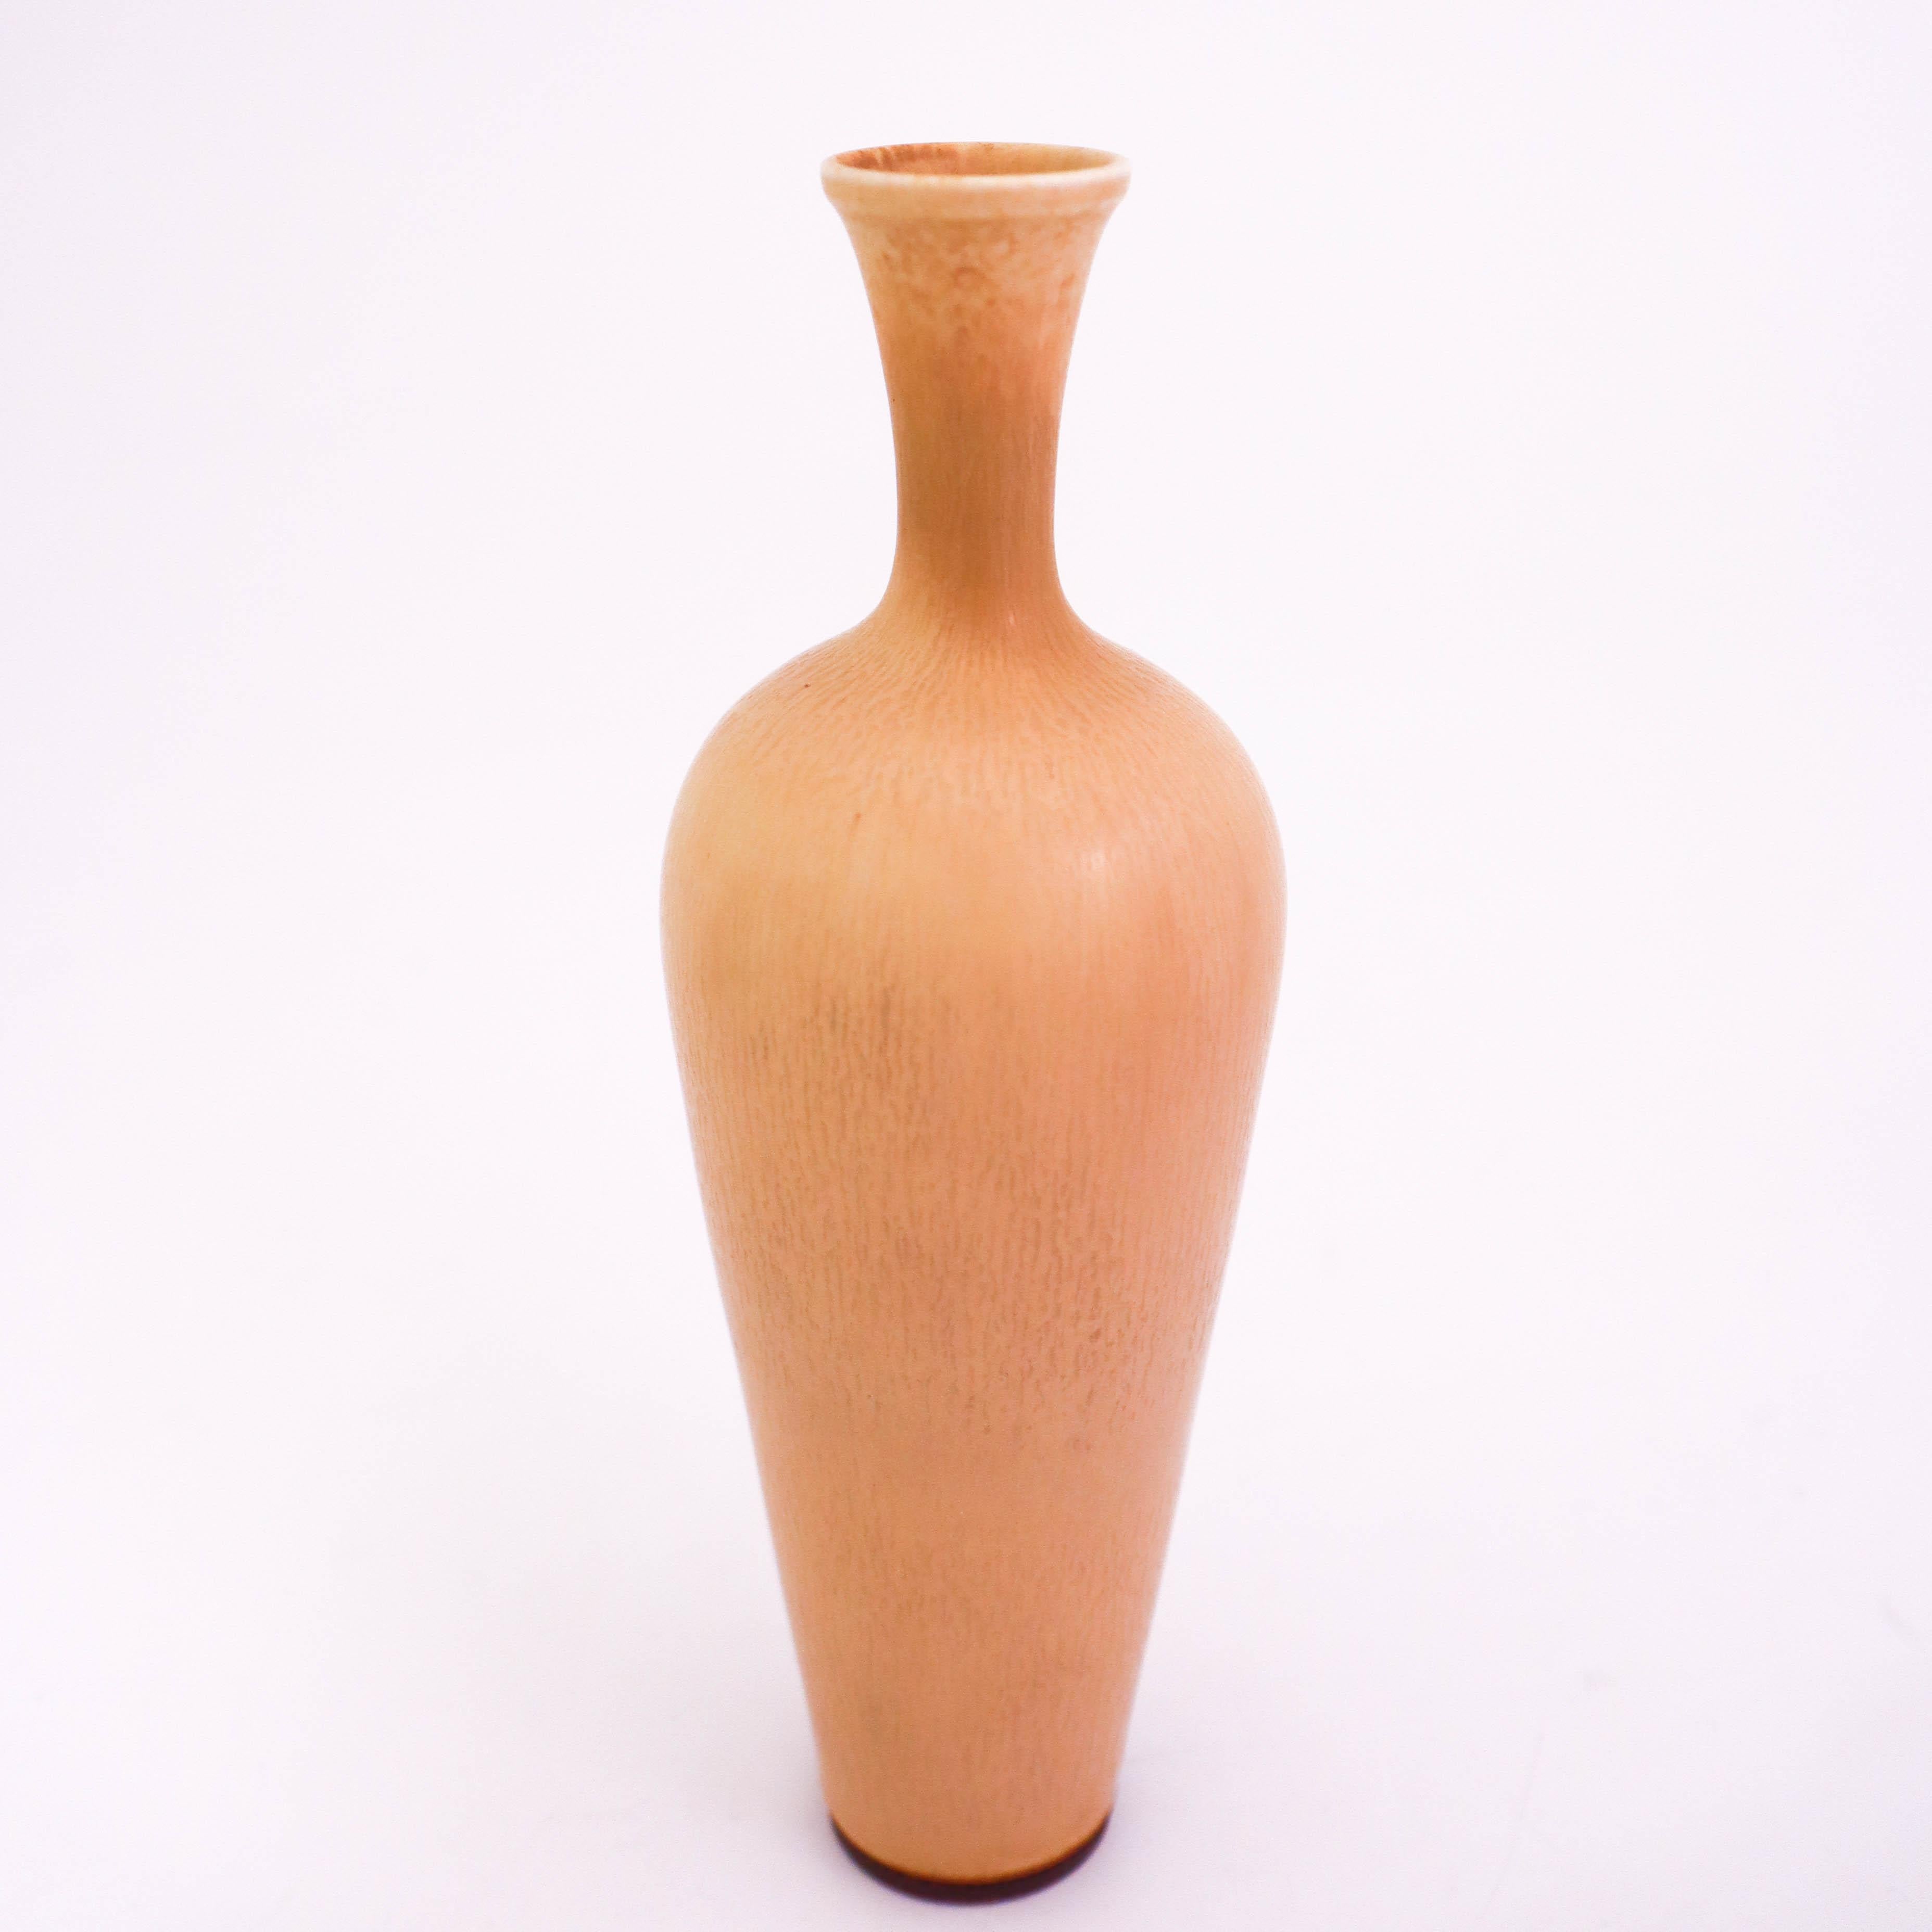 Un vase en grès beige conçu par Berndt Friberg de Gustavsberg. Le vase mesure 17,5 cm. Il est en très bon état.